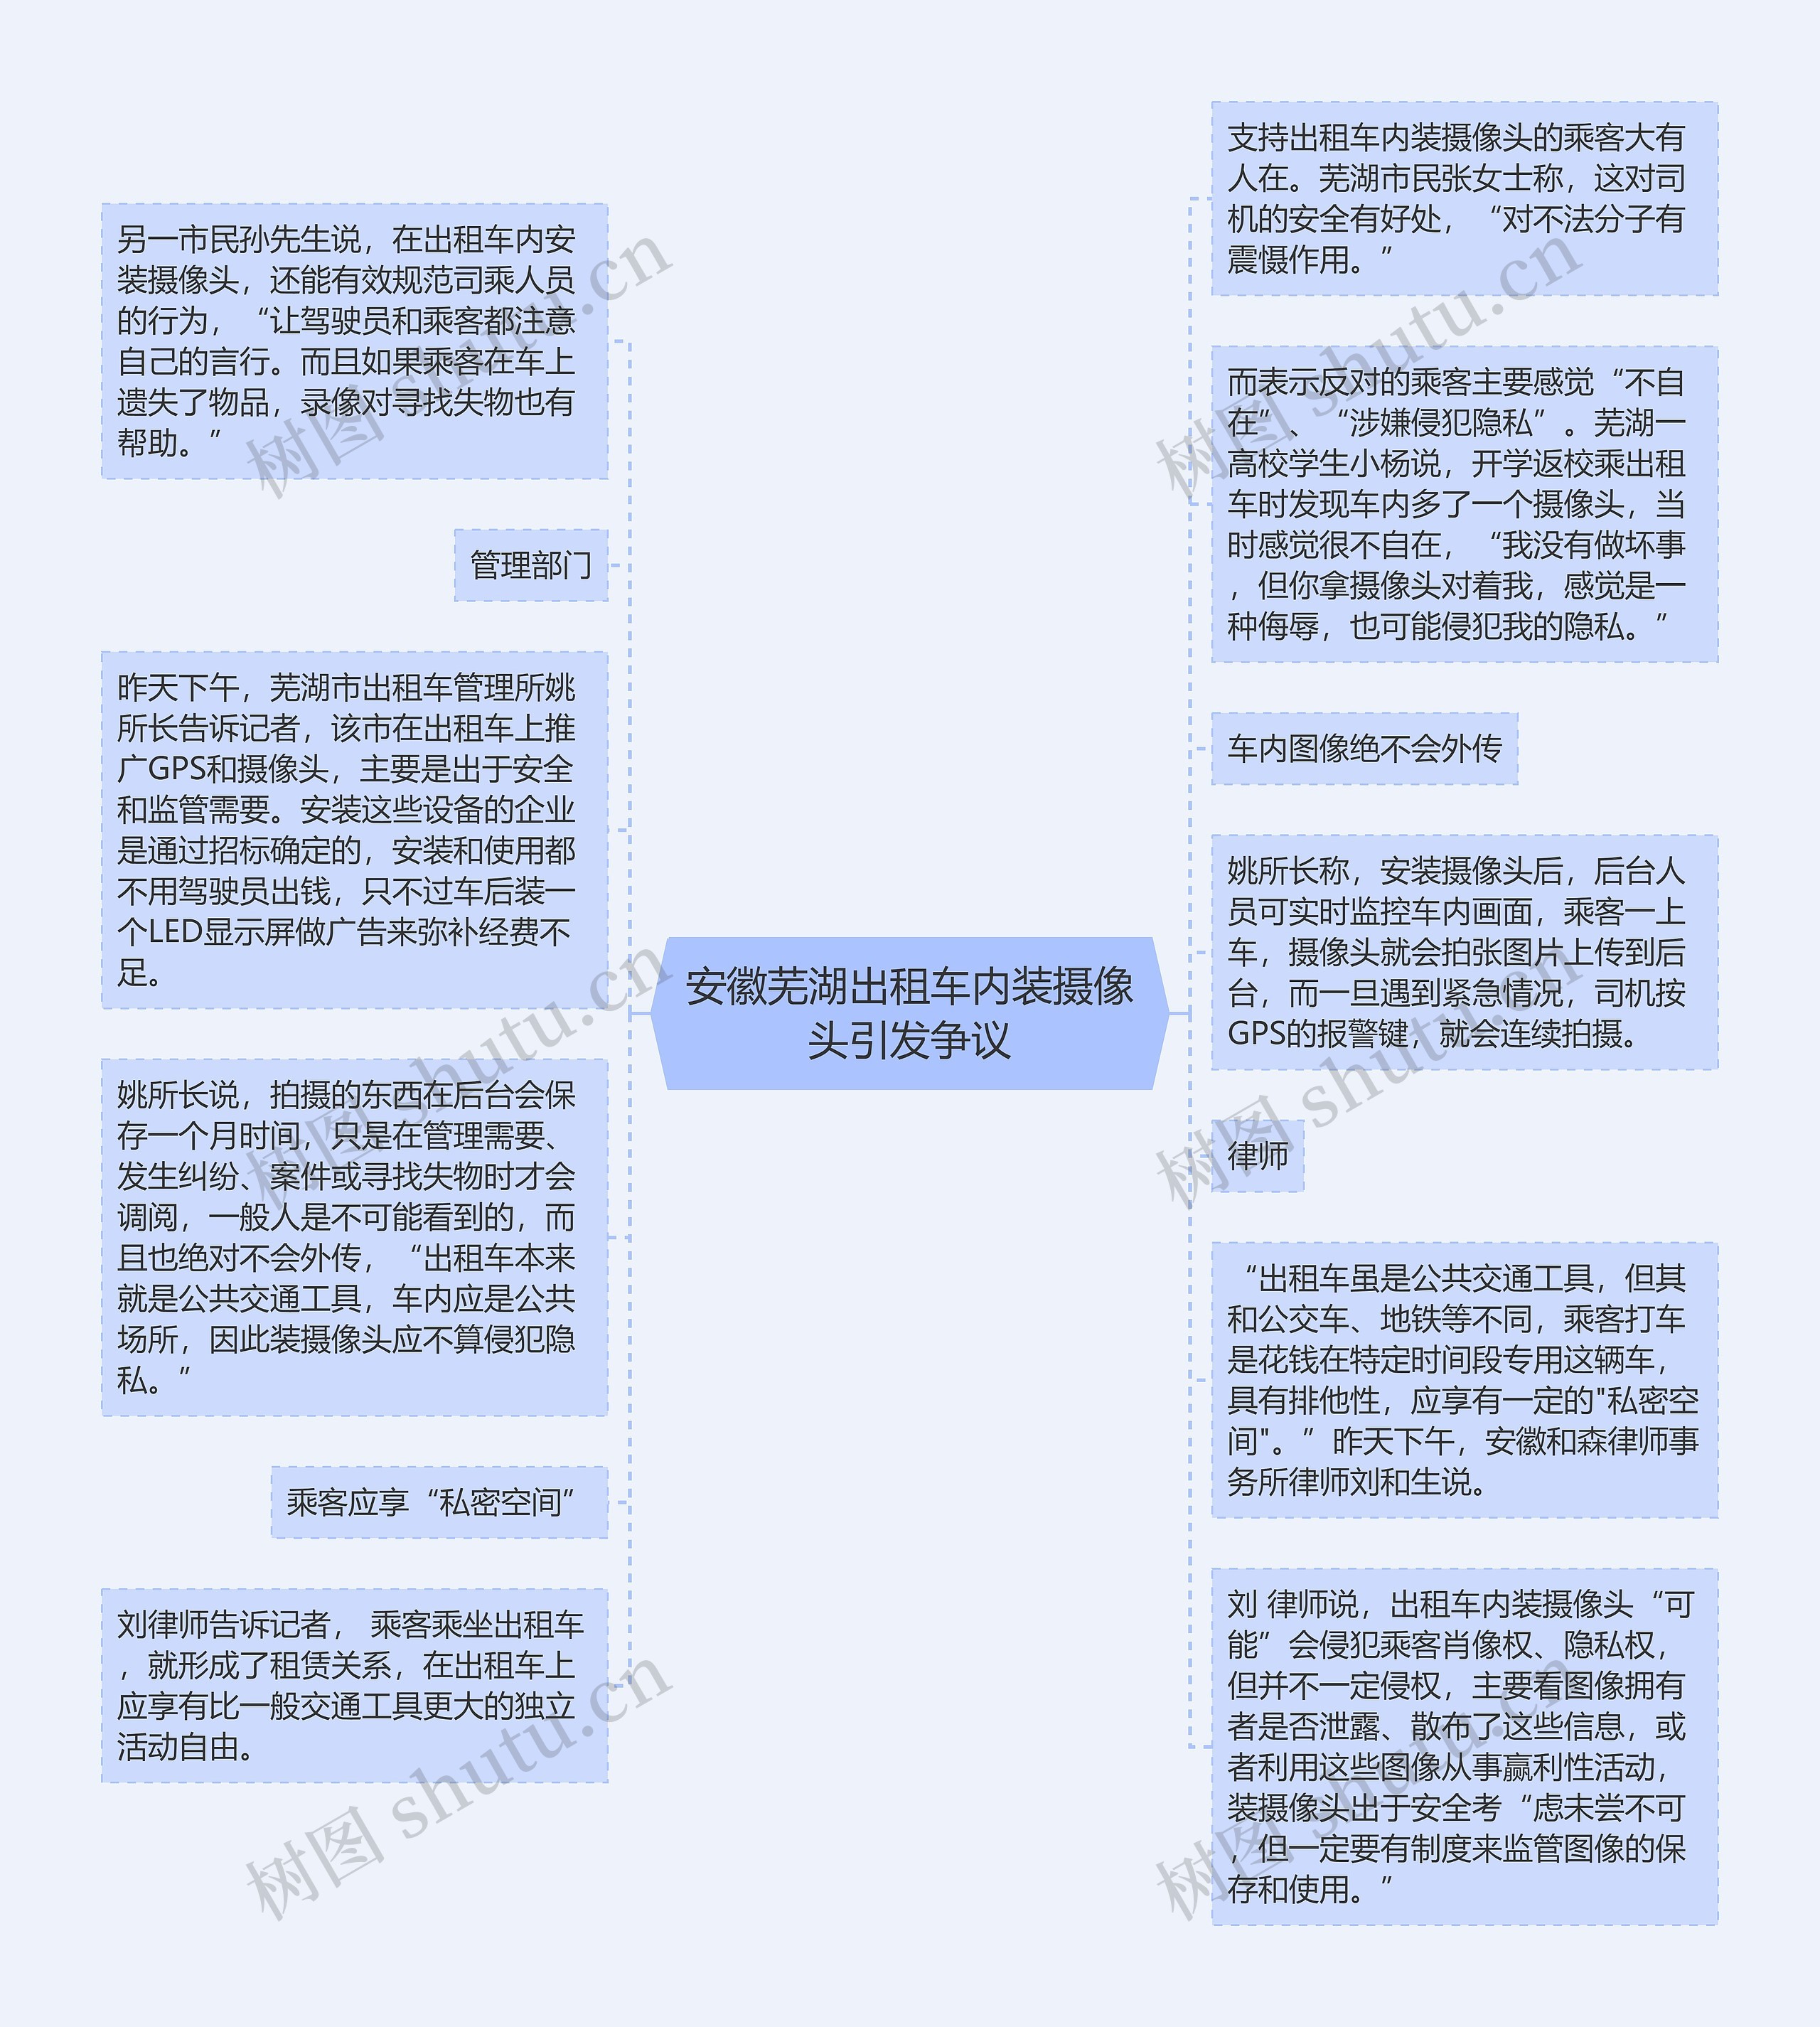 安徽芜湖出租车内装摄像头引发争议思维导图